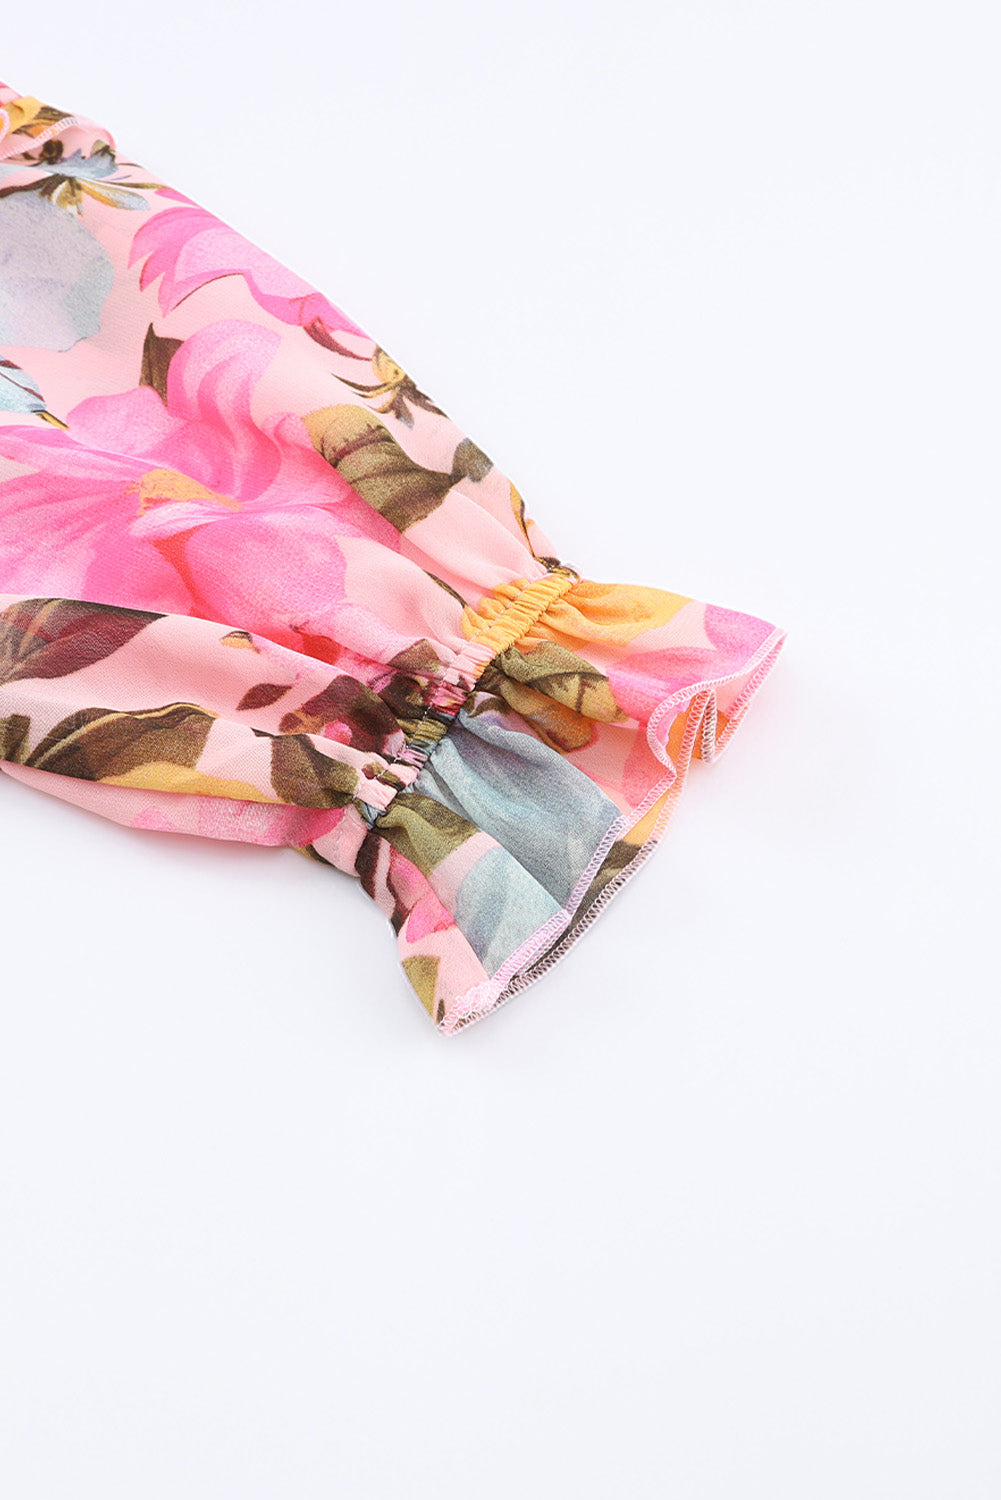 Rožnata bluza z dolgimi rokavi v več stopnjah s cvetličnim potiskom